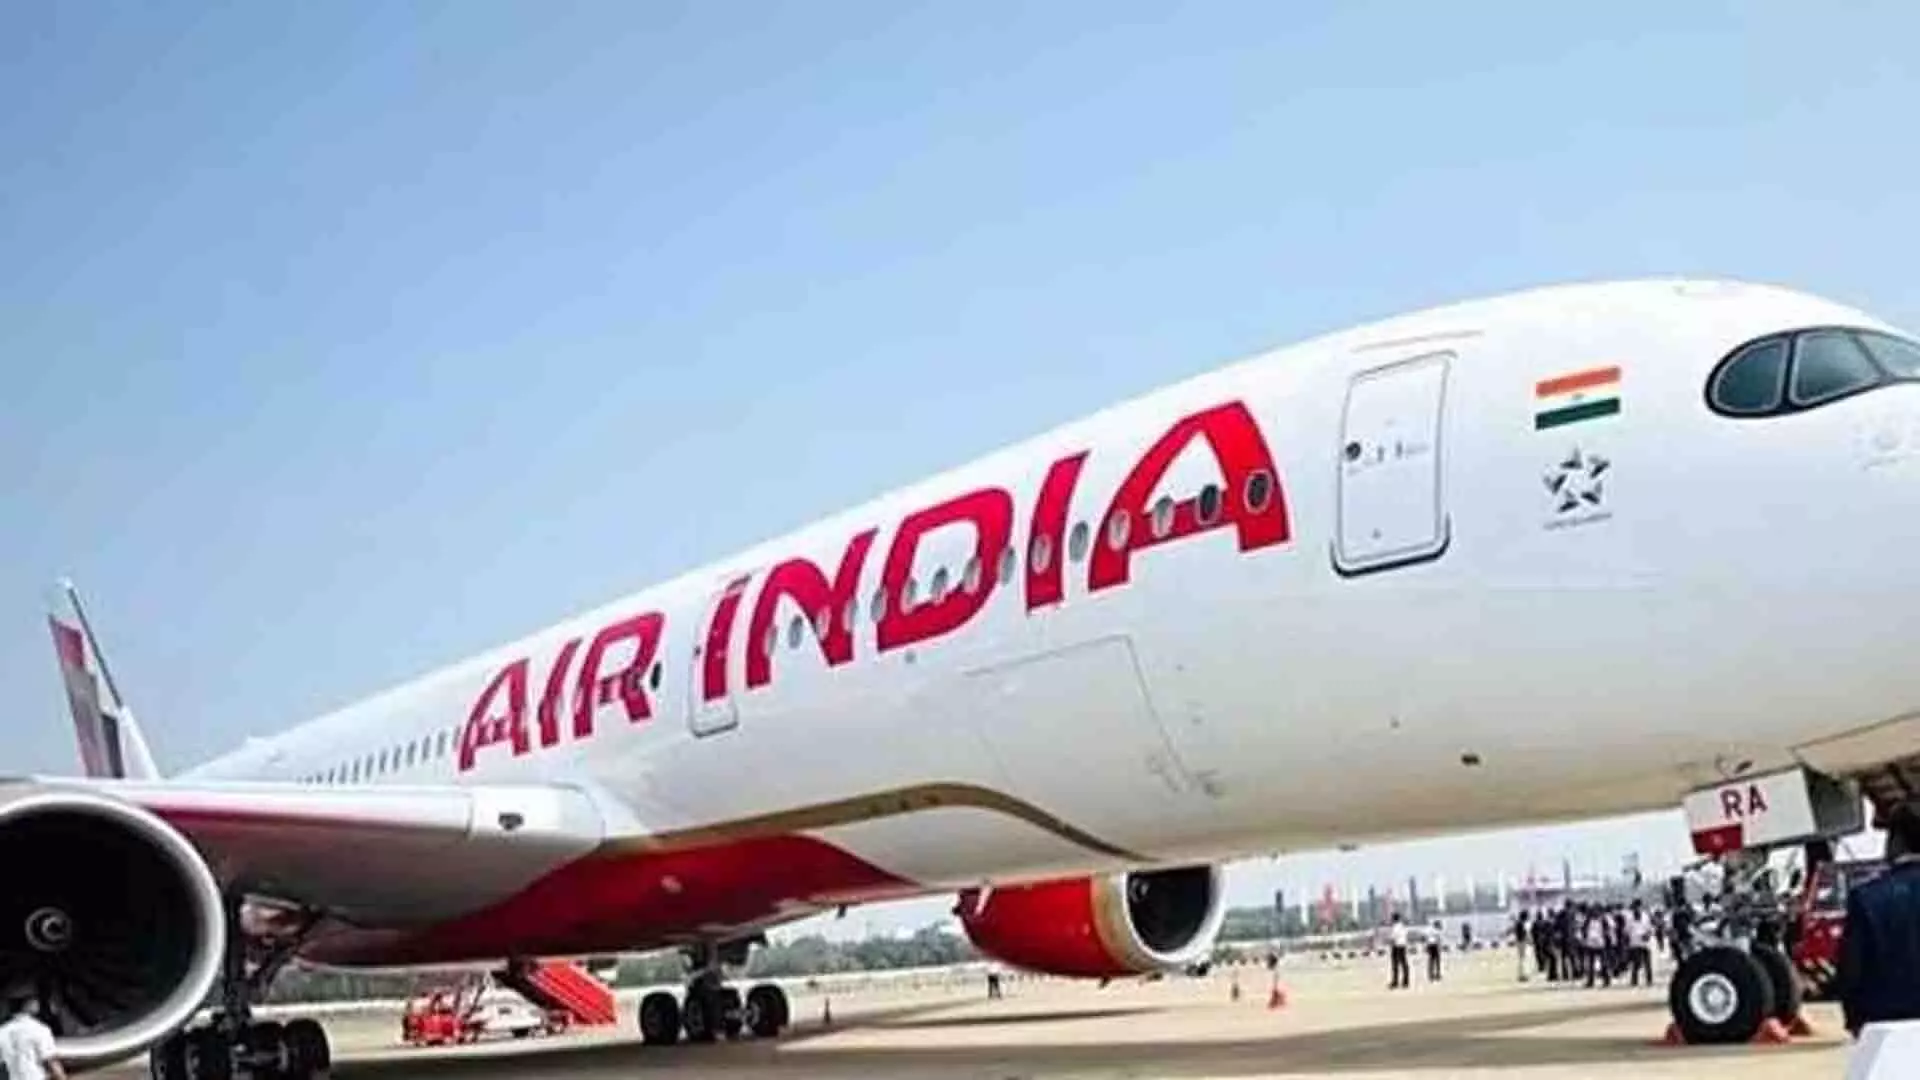 यात्री ने टूटी खिड़की वाली सीट के लिए एयर इंडिया की आलोचना की, एयरलाइन ने जवाब दिया